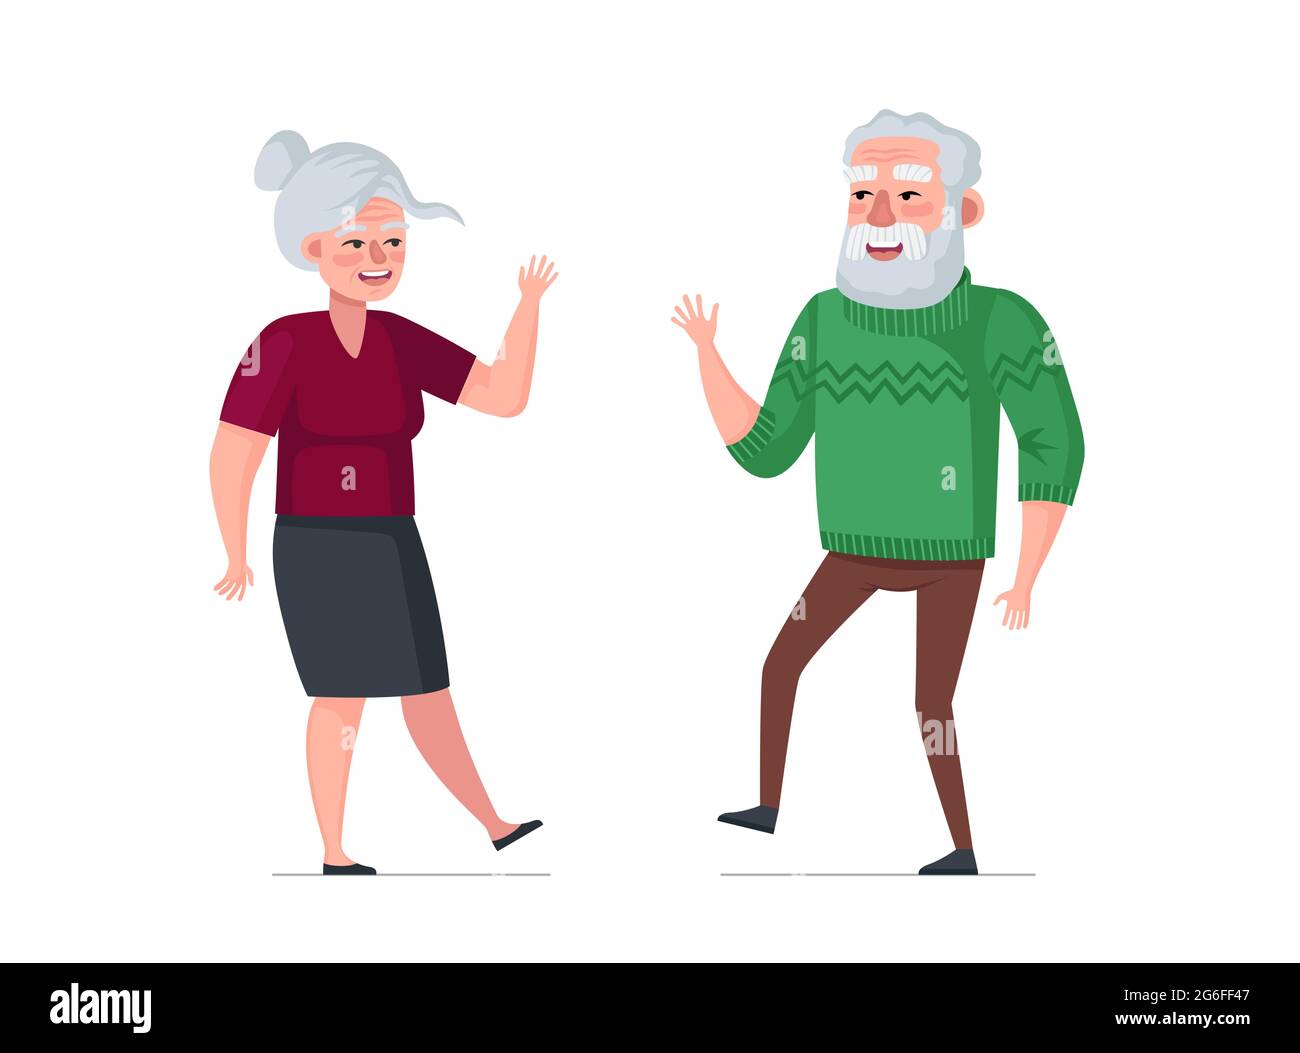 Ältere aktive fröhliche Mann und Frau Paar tanzen. Gesundes Happy-Age-Konzept. Menschen Senioren verbringen gerne Zeit zusammen auf Tanzparty. Oma und Opa feiern Hochzeit Datum Illustration Stock Vektor